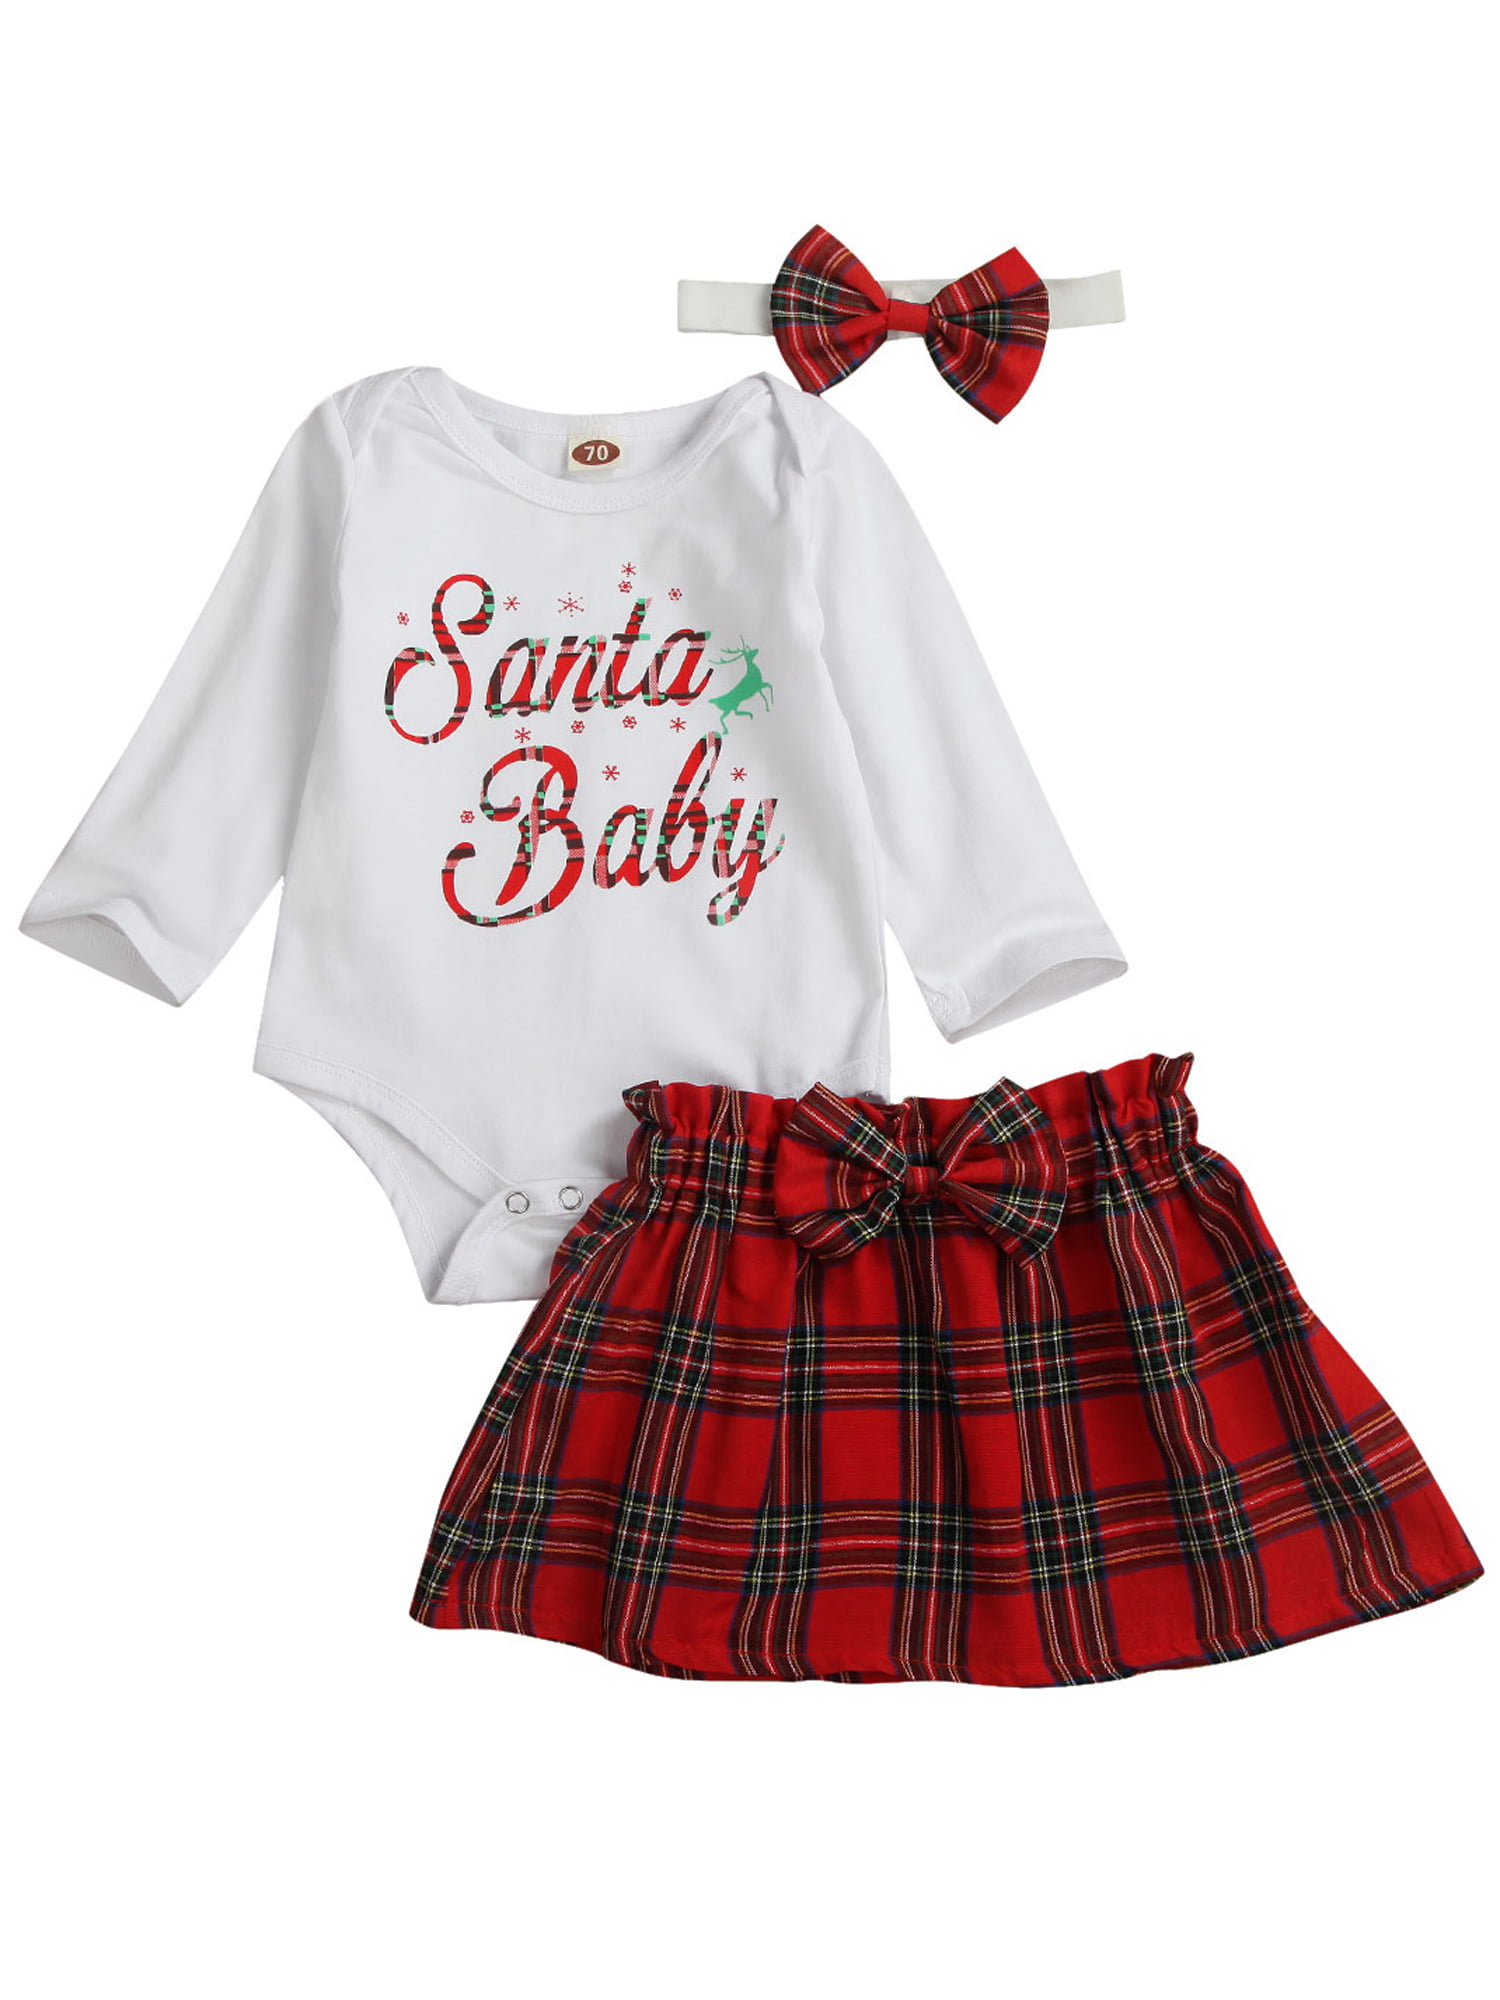 santa baby dress